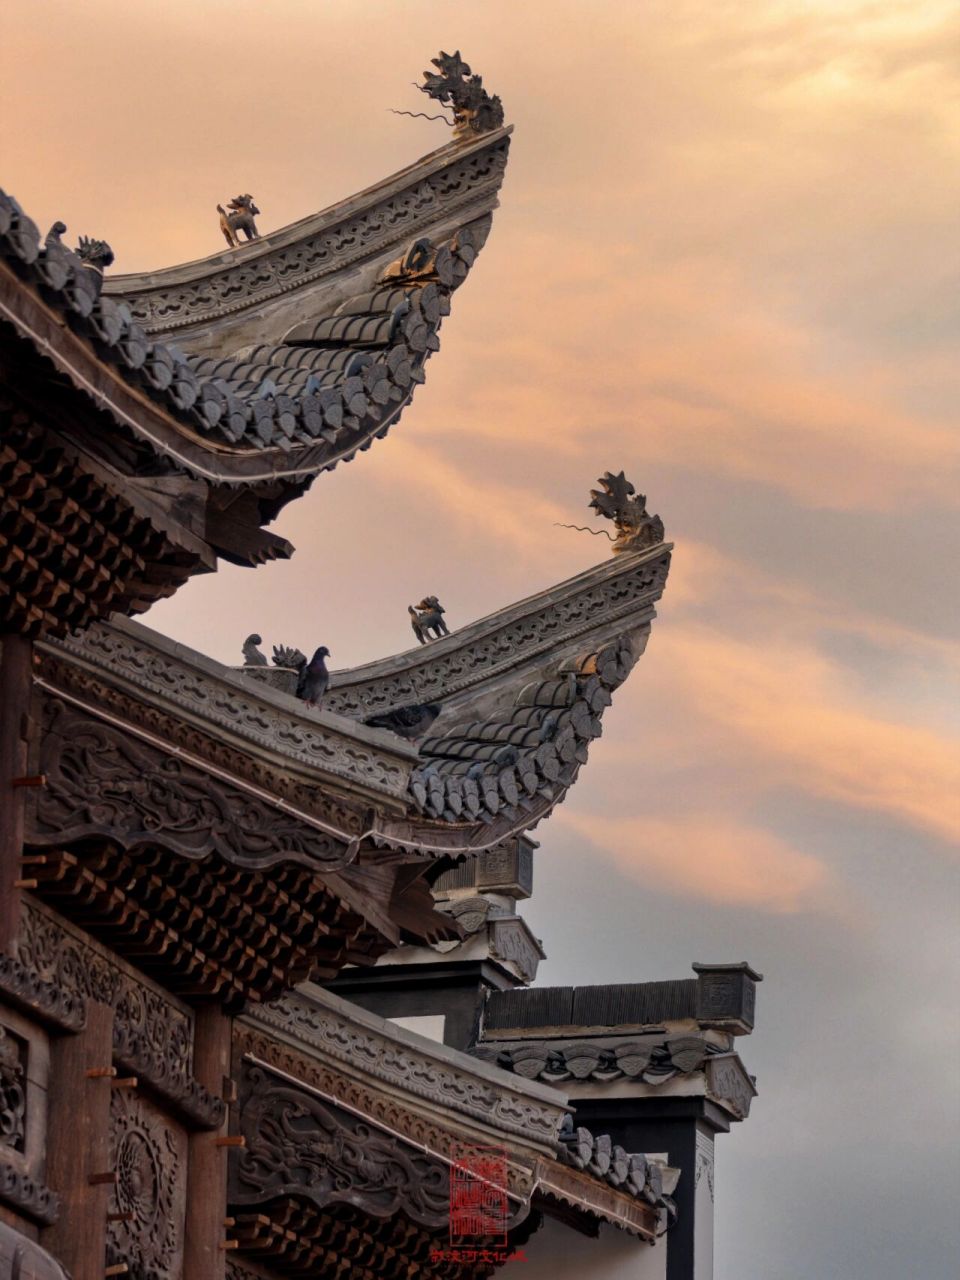 【徽派古建筑详解——飞檐】 飞檐,指的是中国传统建筑屋面中的转角处